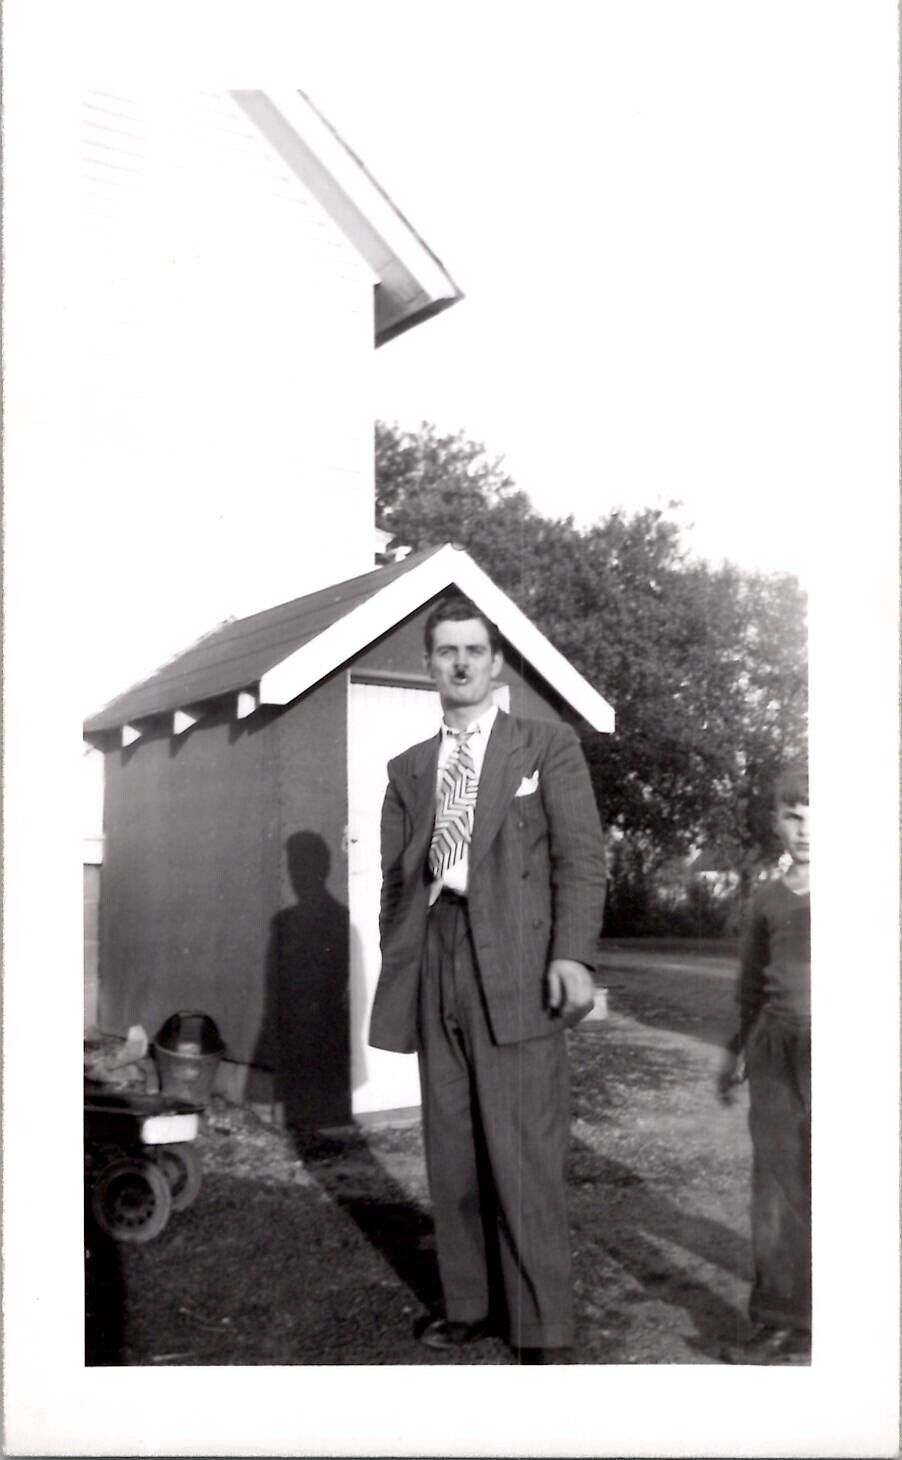 HOT GAY MASCULINE MAN SMOKING A LONG CIGAR ~ 1940s VINTAGE GAY PHOTOGRAPH